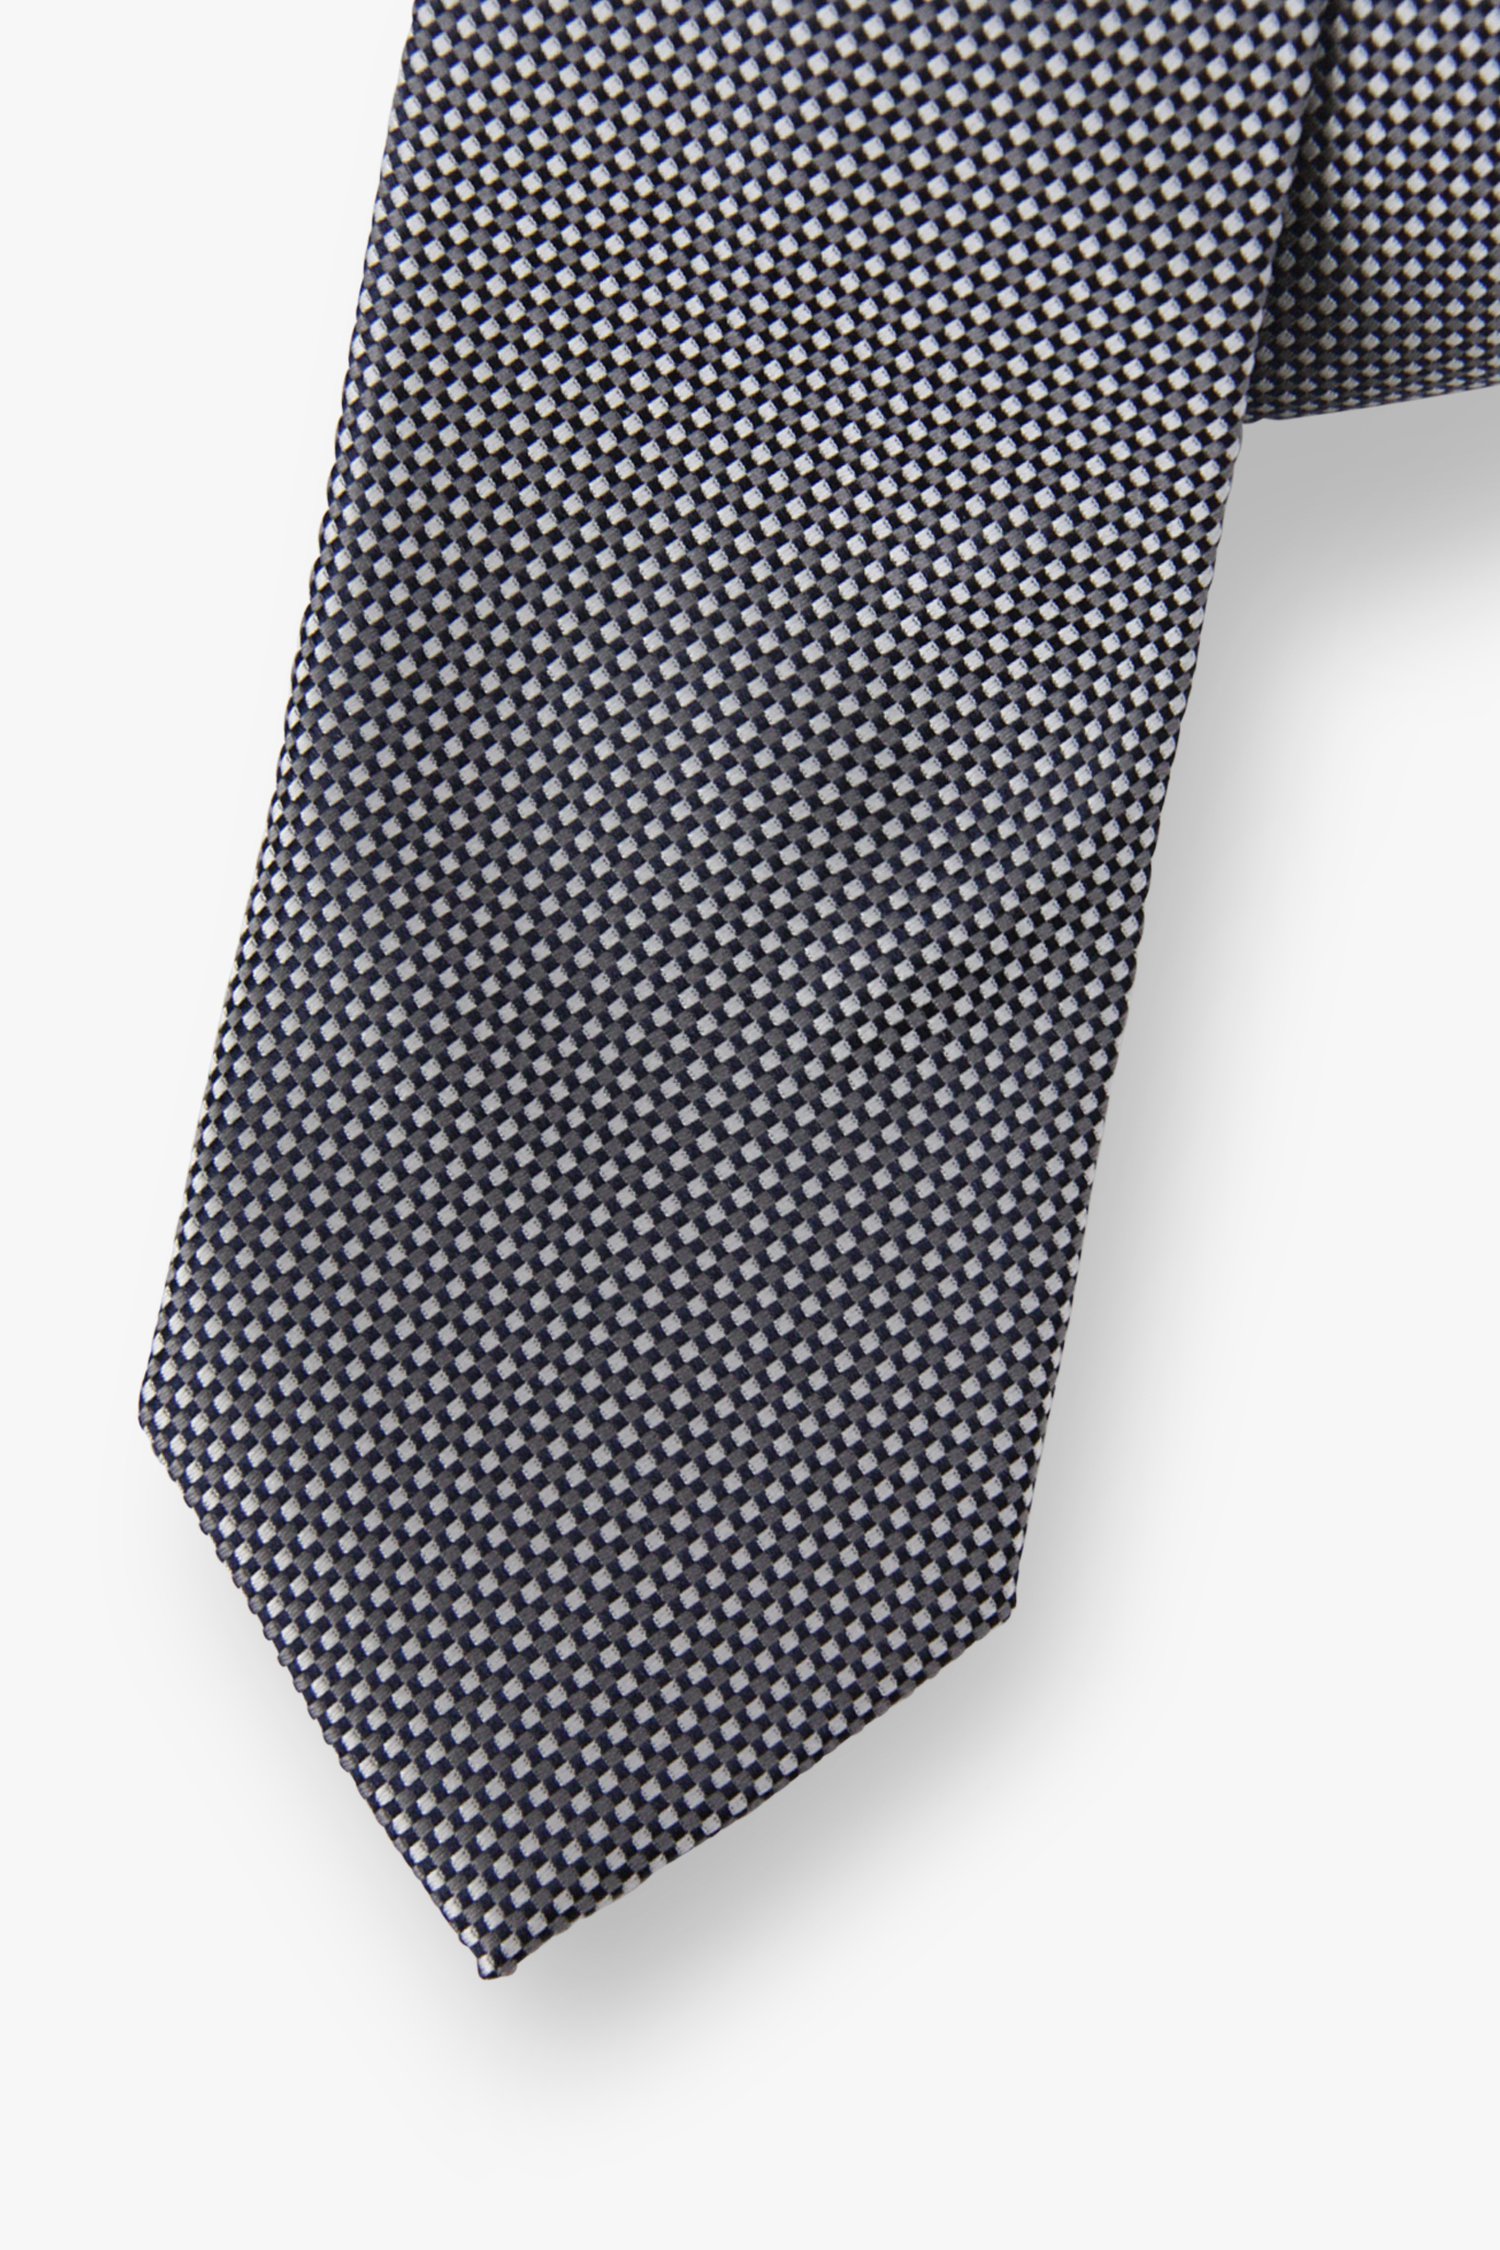 Cravate grise à motif fin  de Michaelis pour Hommes